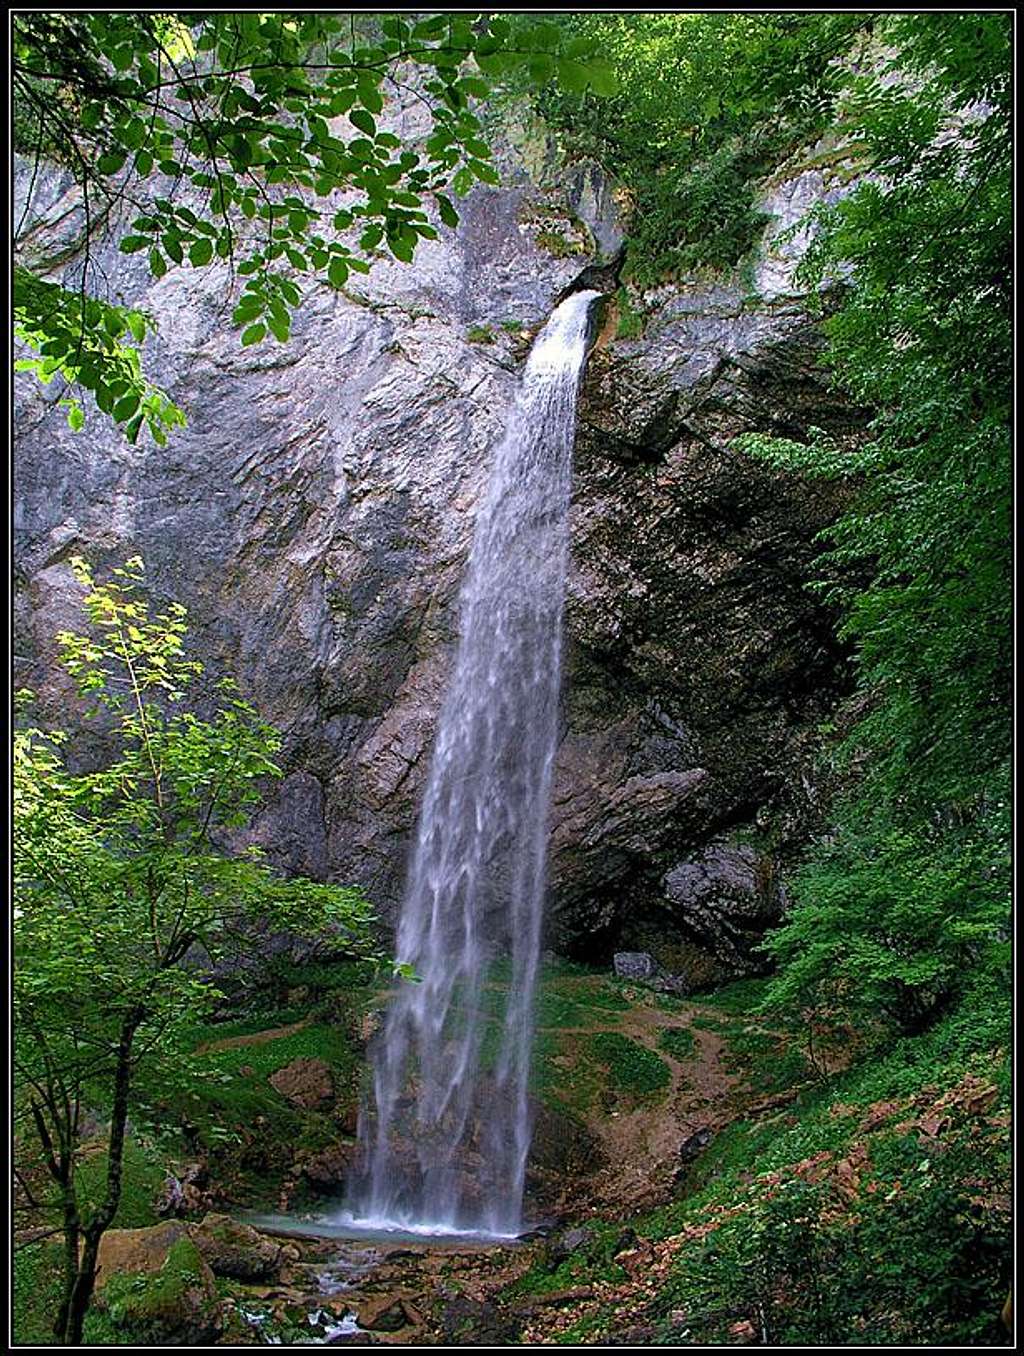 Wildenstein waterfall